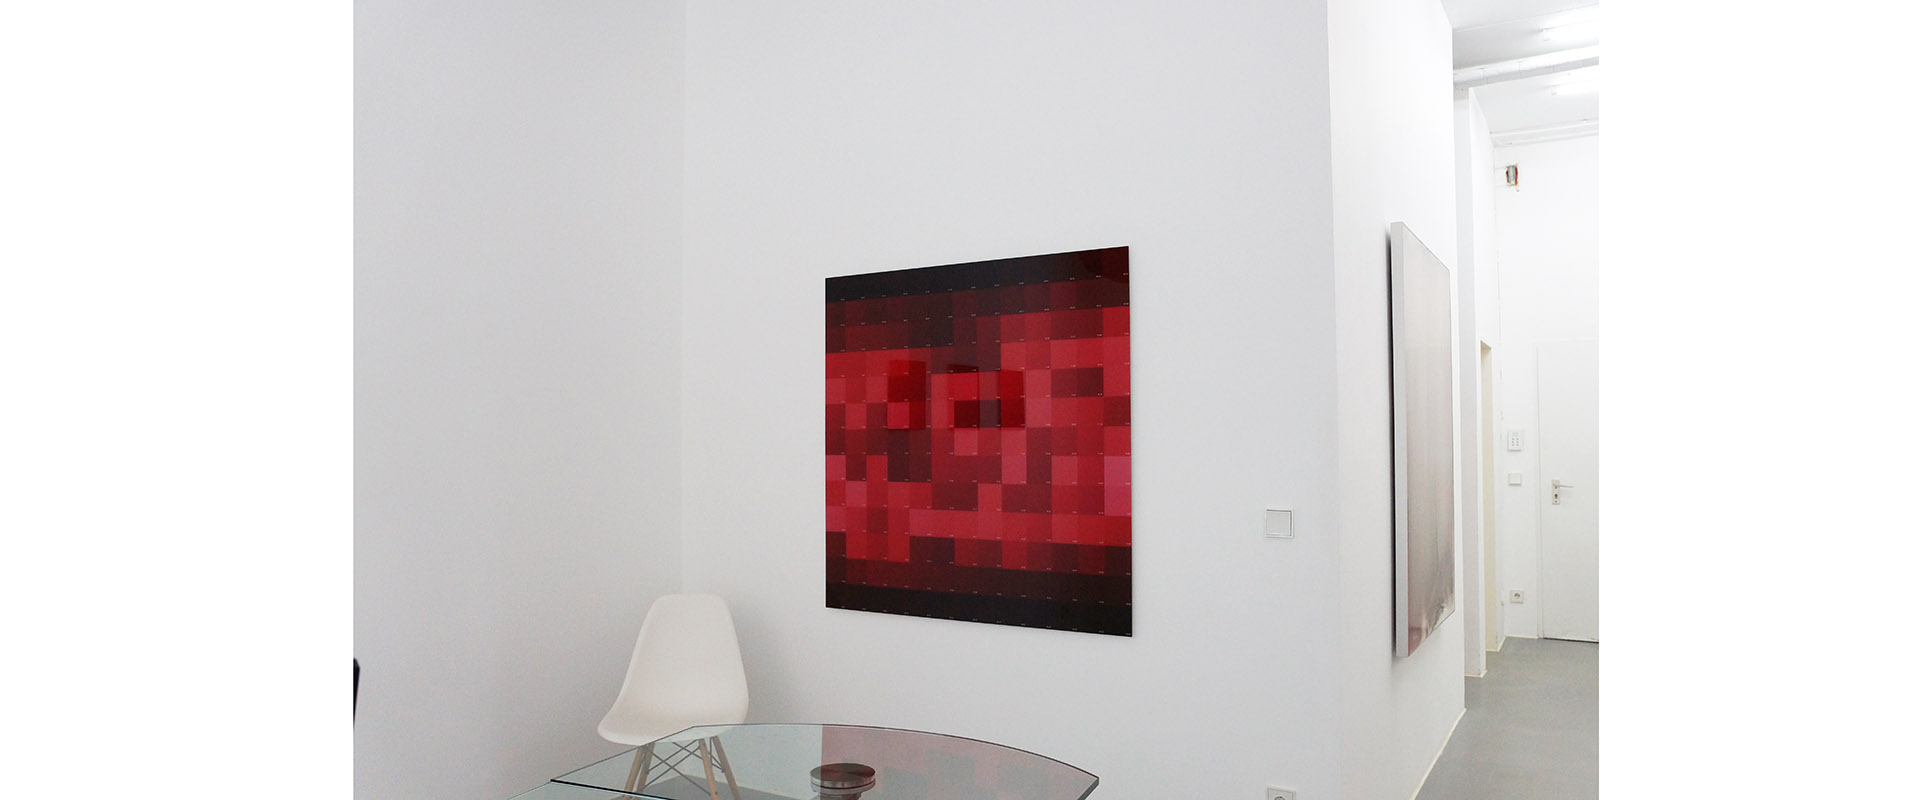 Ausstellungsansicht "Fifty Shades of Red", Galerie Renate Bender 2016